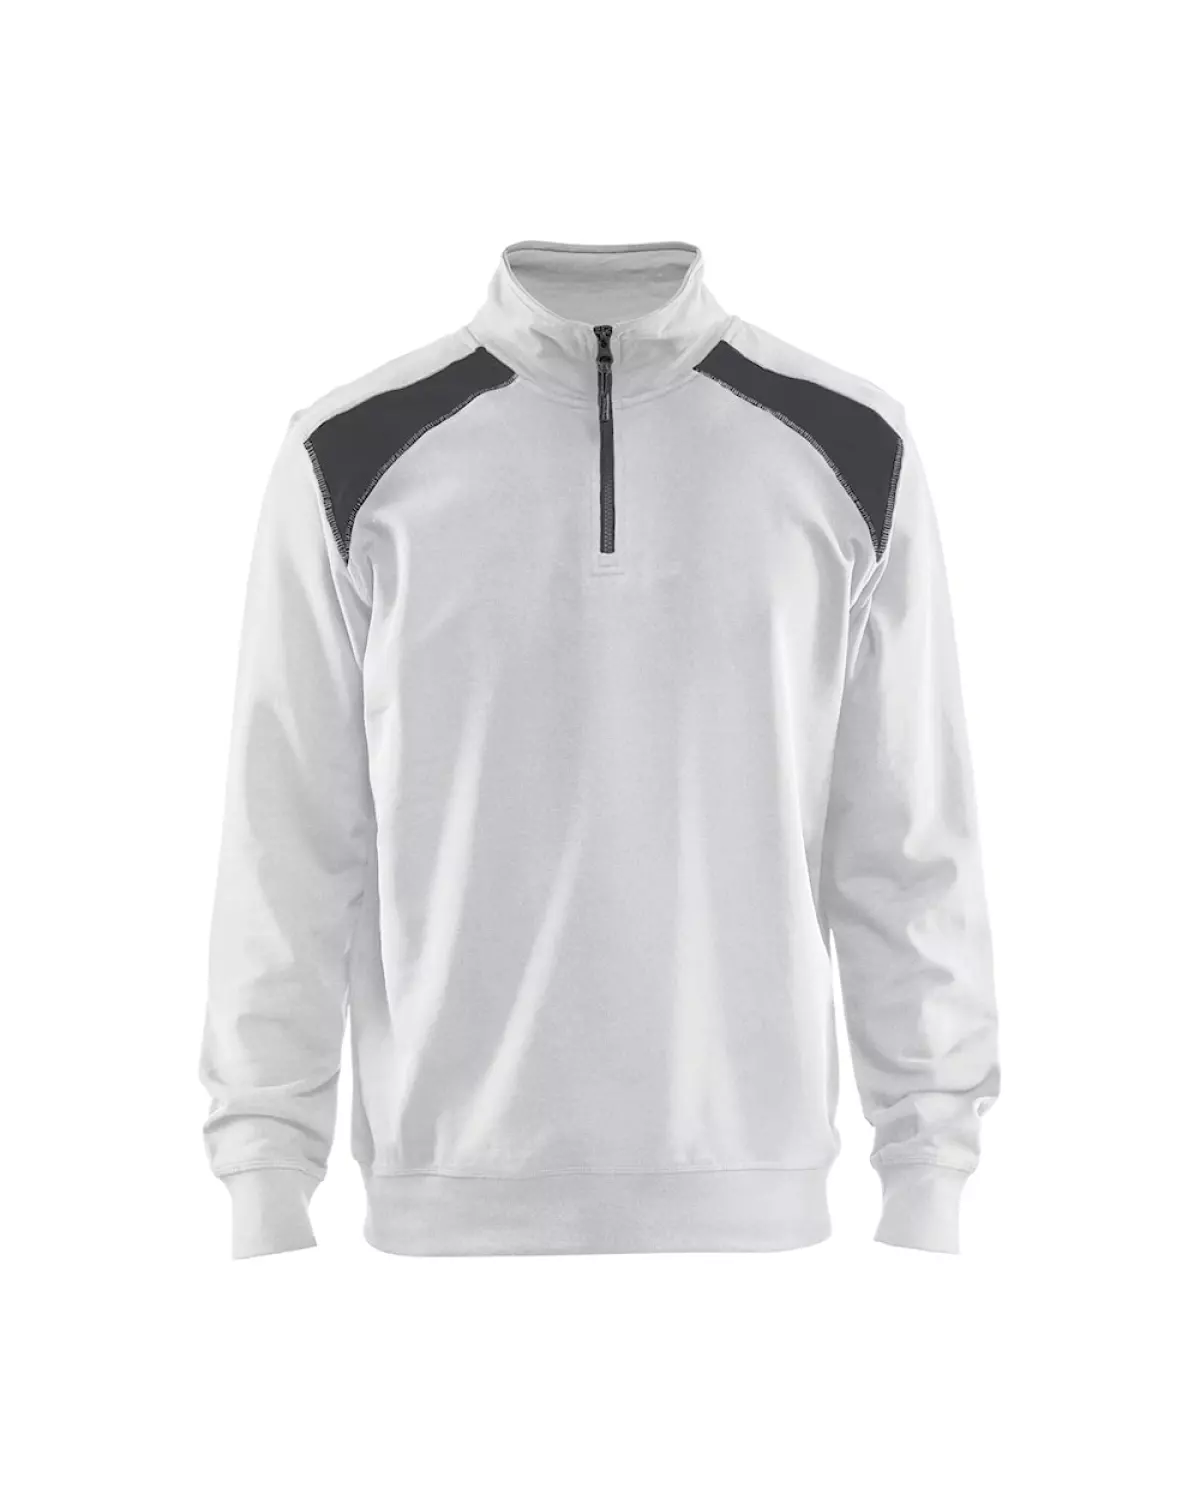 Blåkläder 335311581098S Sweatshirt met halve rits - bi-colour Wit/Donkergrijs - S-image